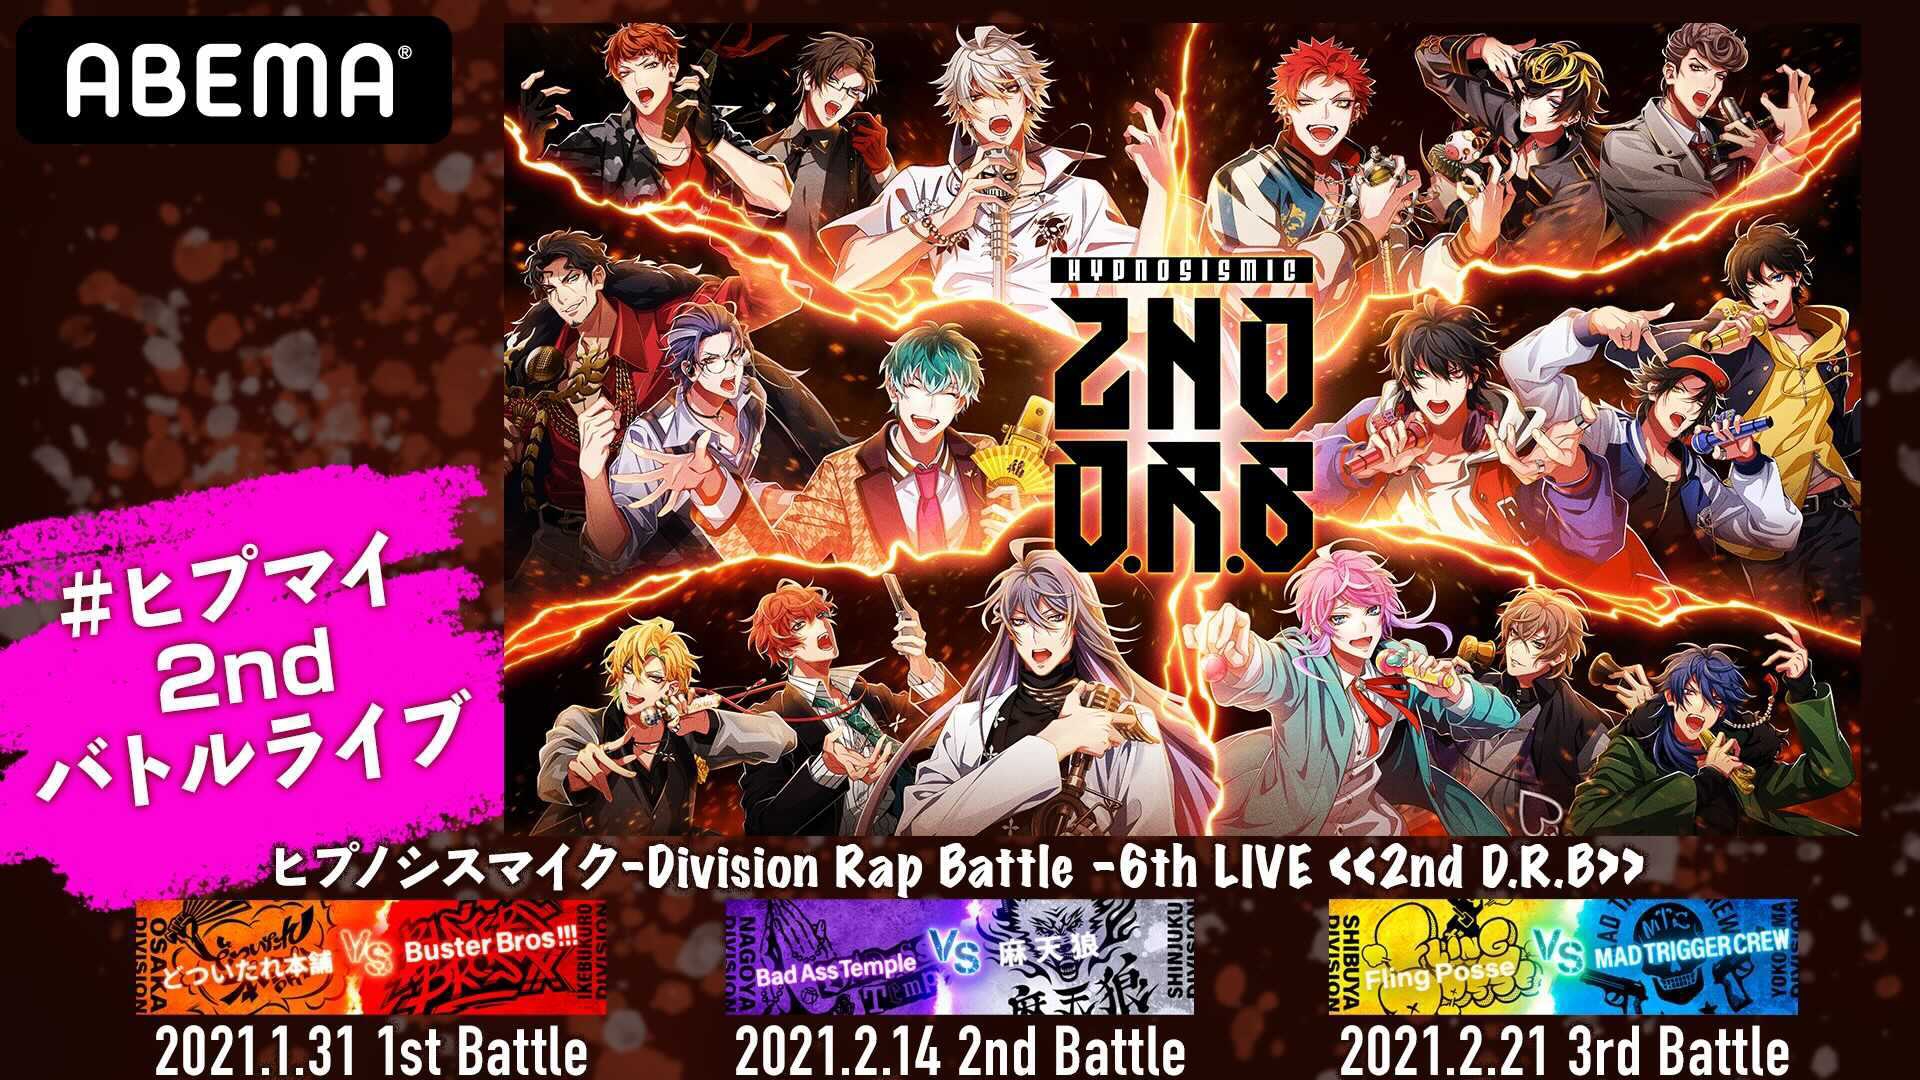 ヒプノシスマイク-Division Rap Battle- 6th LIVE <<2nd D.R.B>>販売